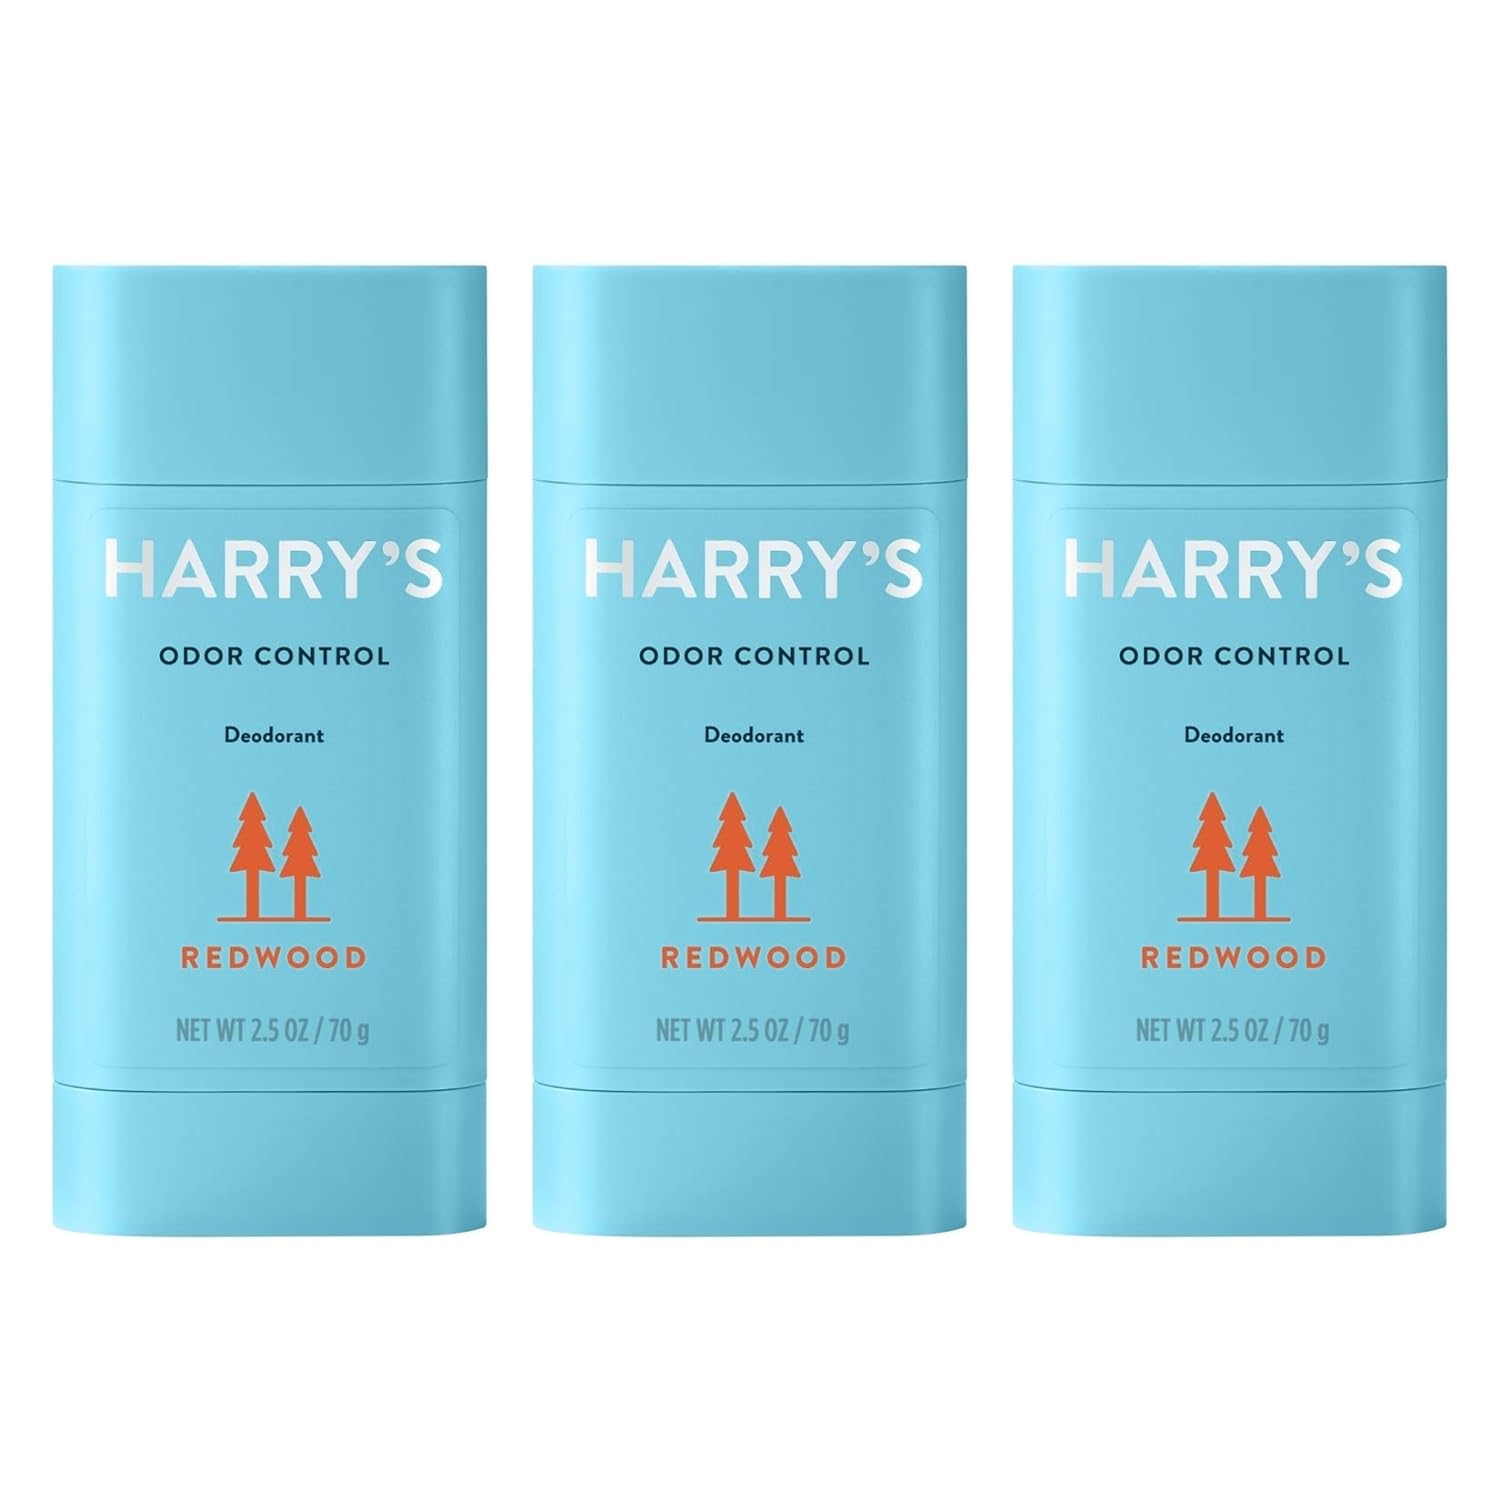 Harry's Men's Deodorant - Odor Control Deodorant - Aluminum-Free - Redwood, 3 count (Pack of 1)